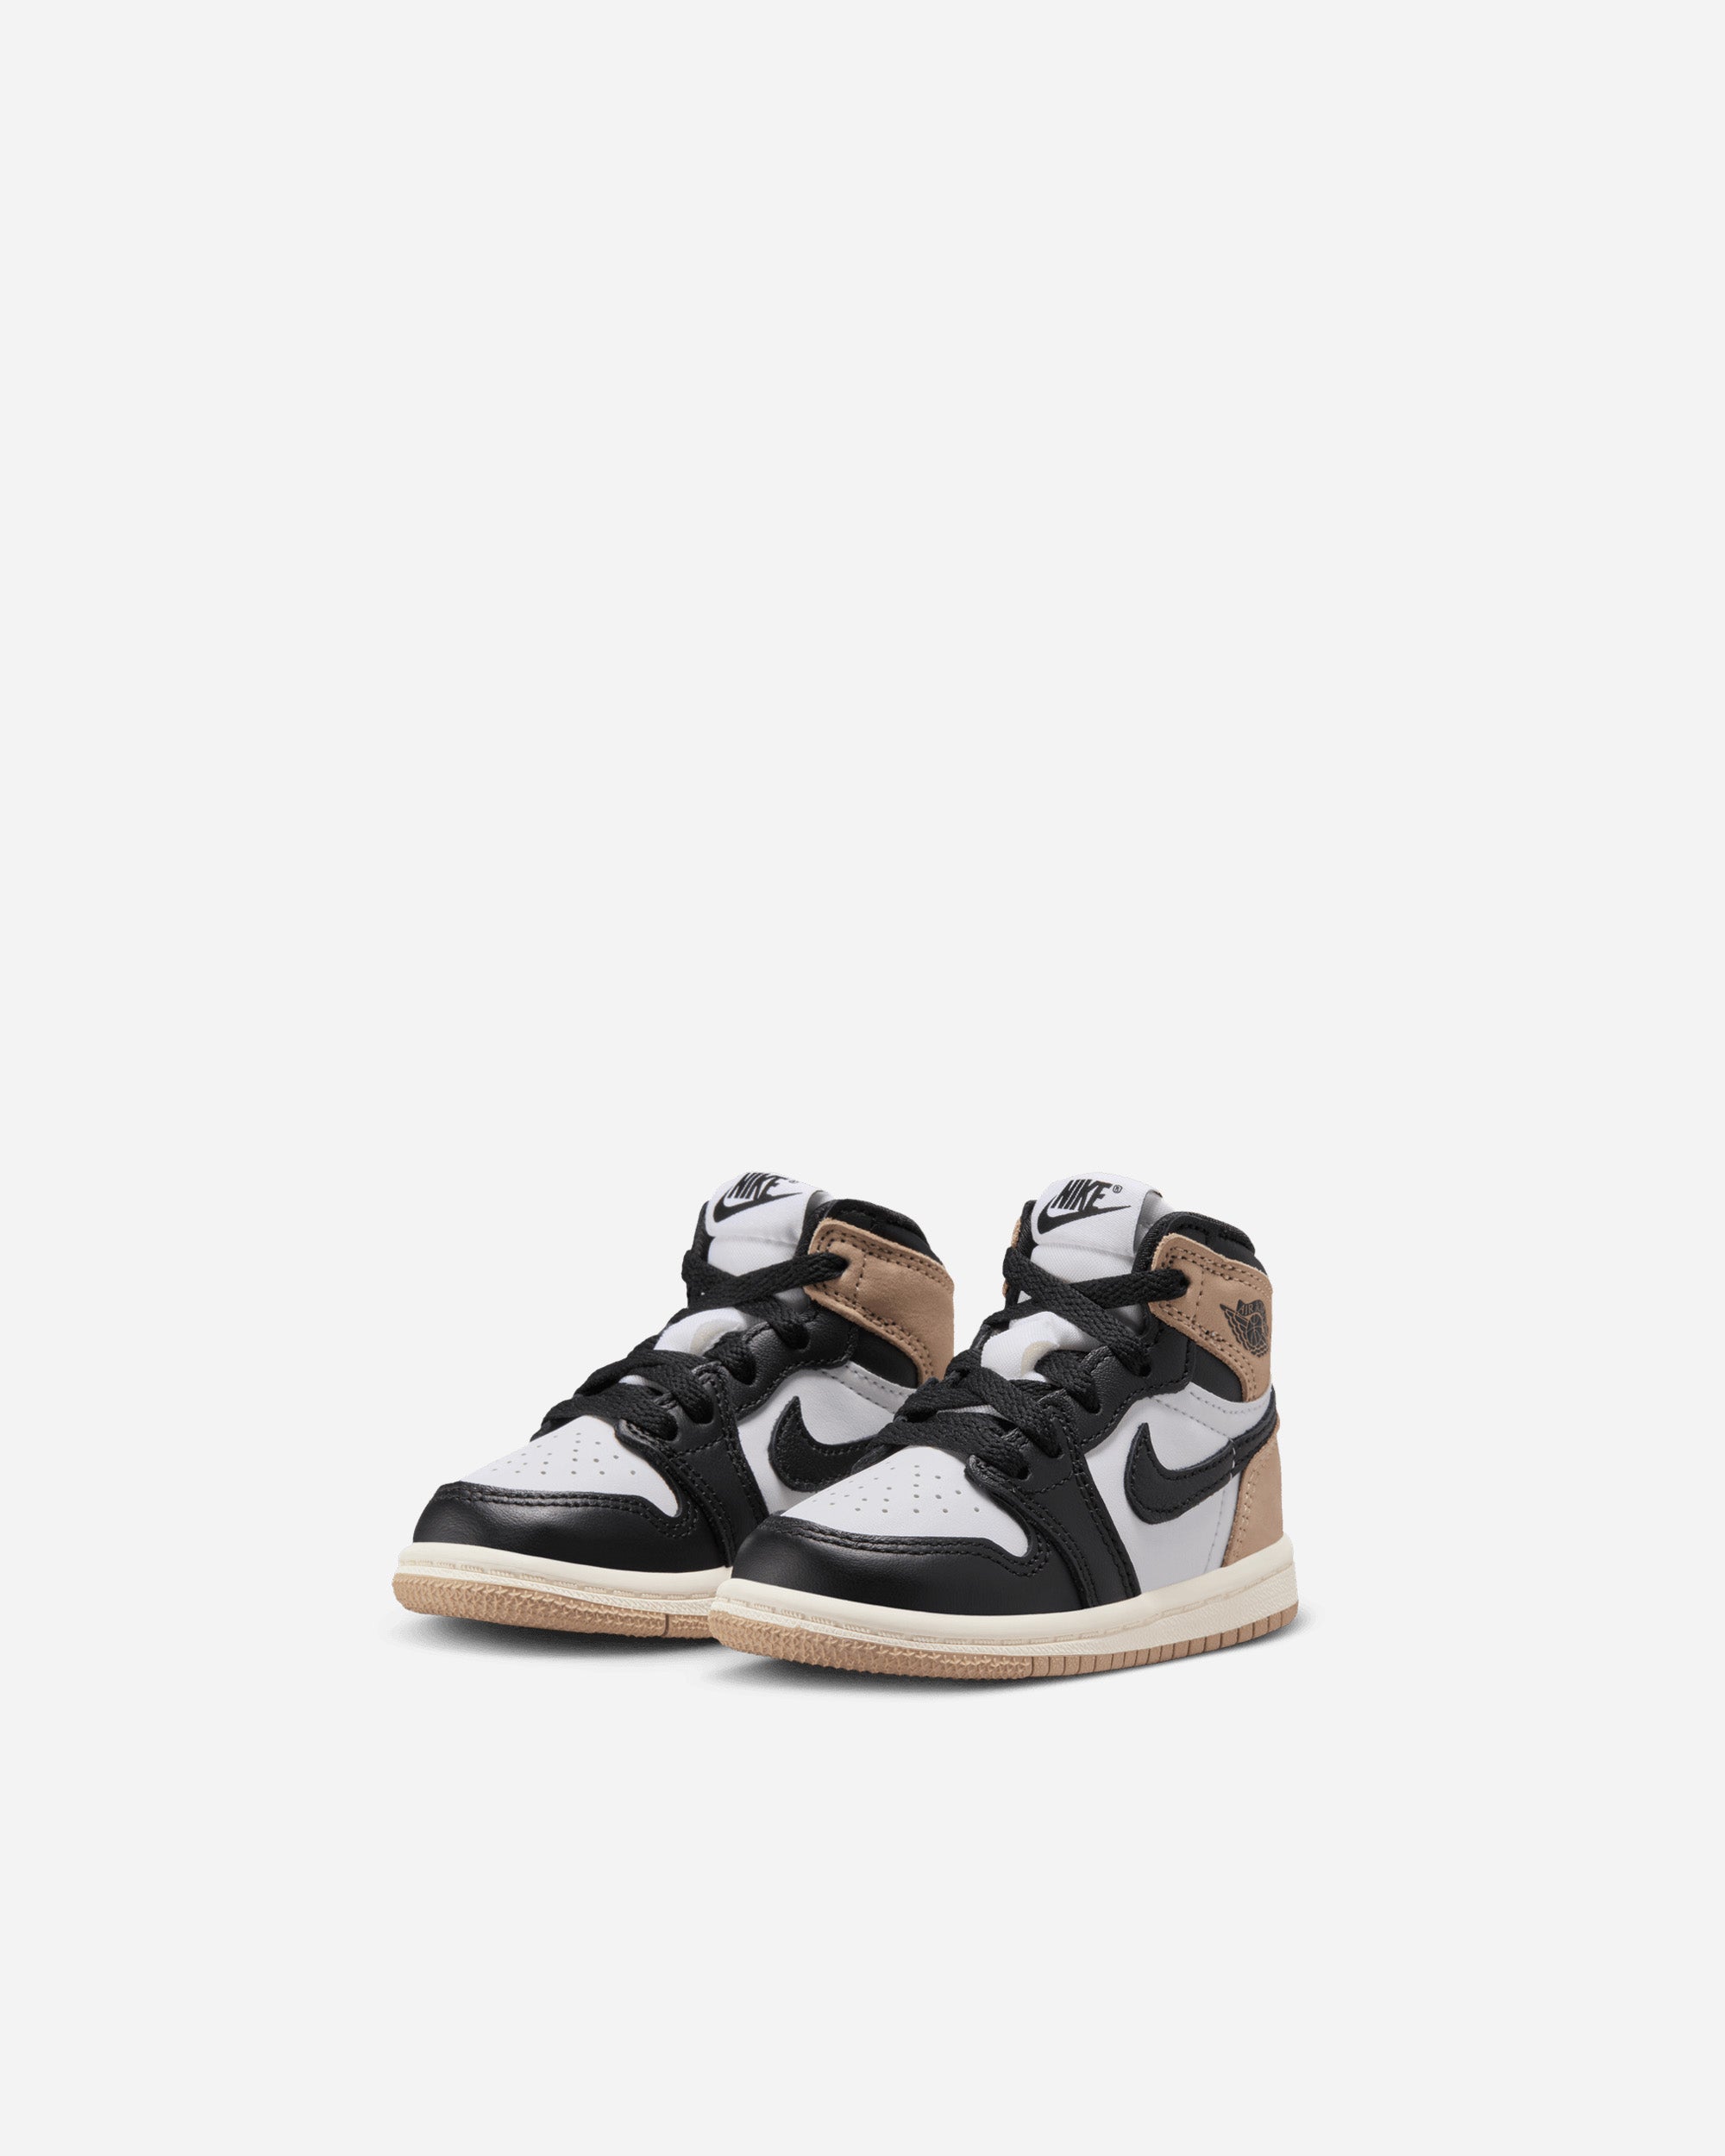 Jordan Brand Jordan 1 Retro High 'Latte' (Toddler) BLACK/BROWN FD2598-021